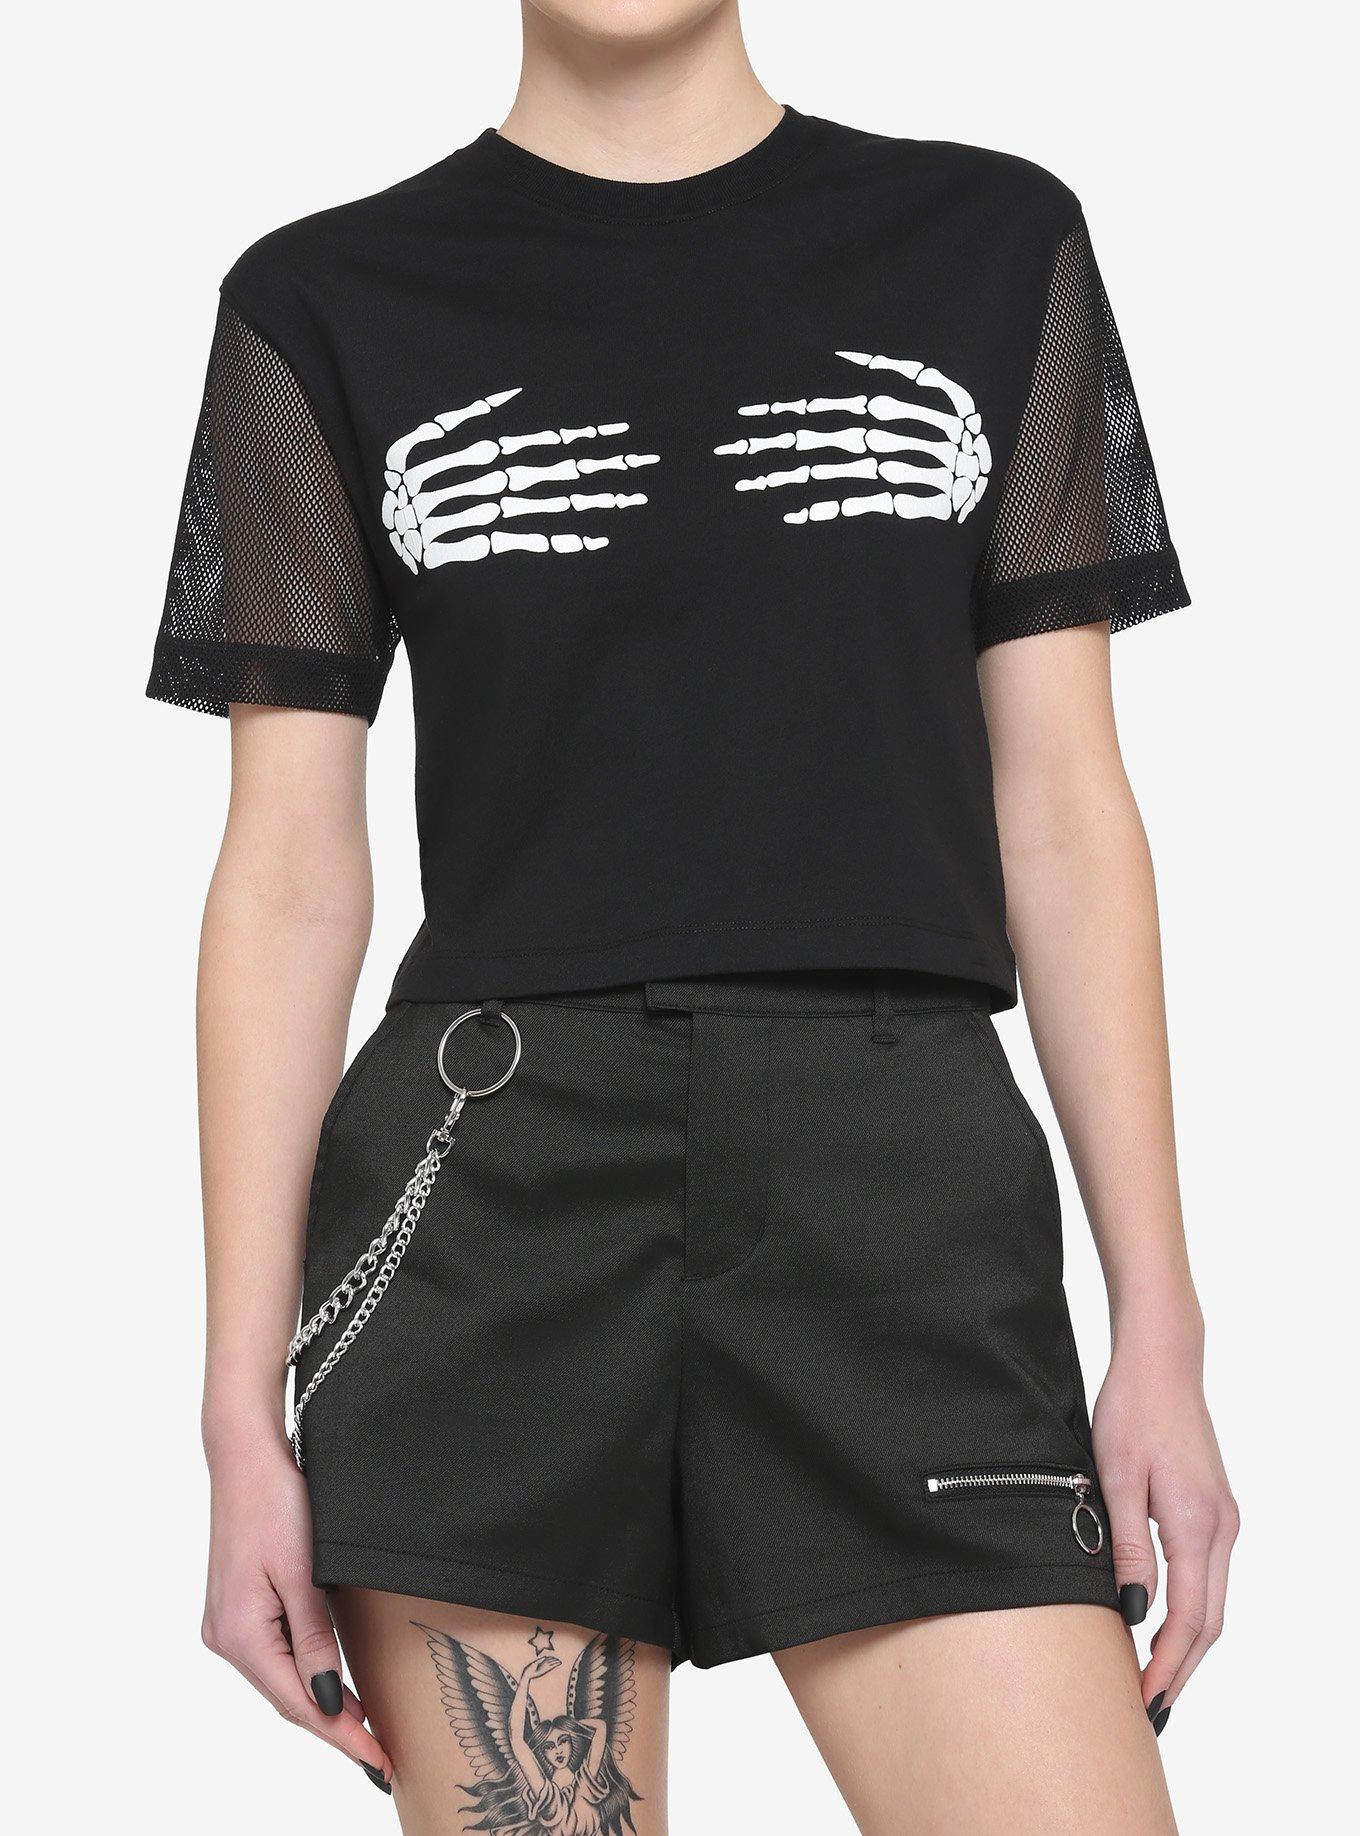 Skeleton Hands Mesh Girls T-Shirt, BLACK, hi-res